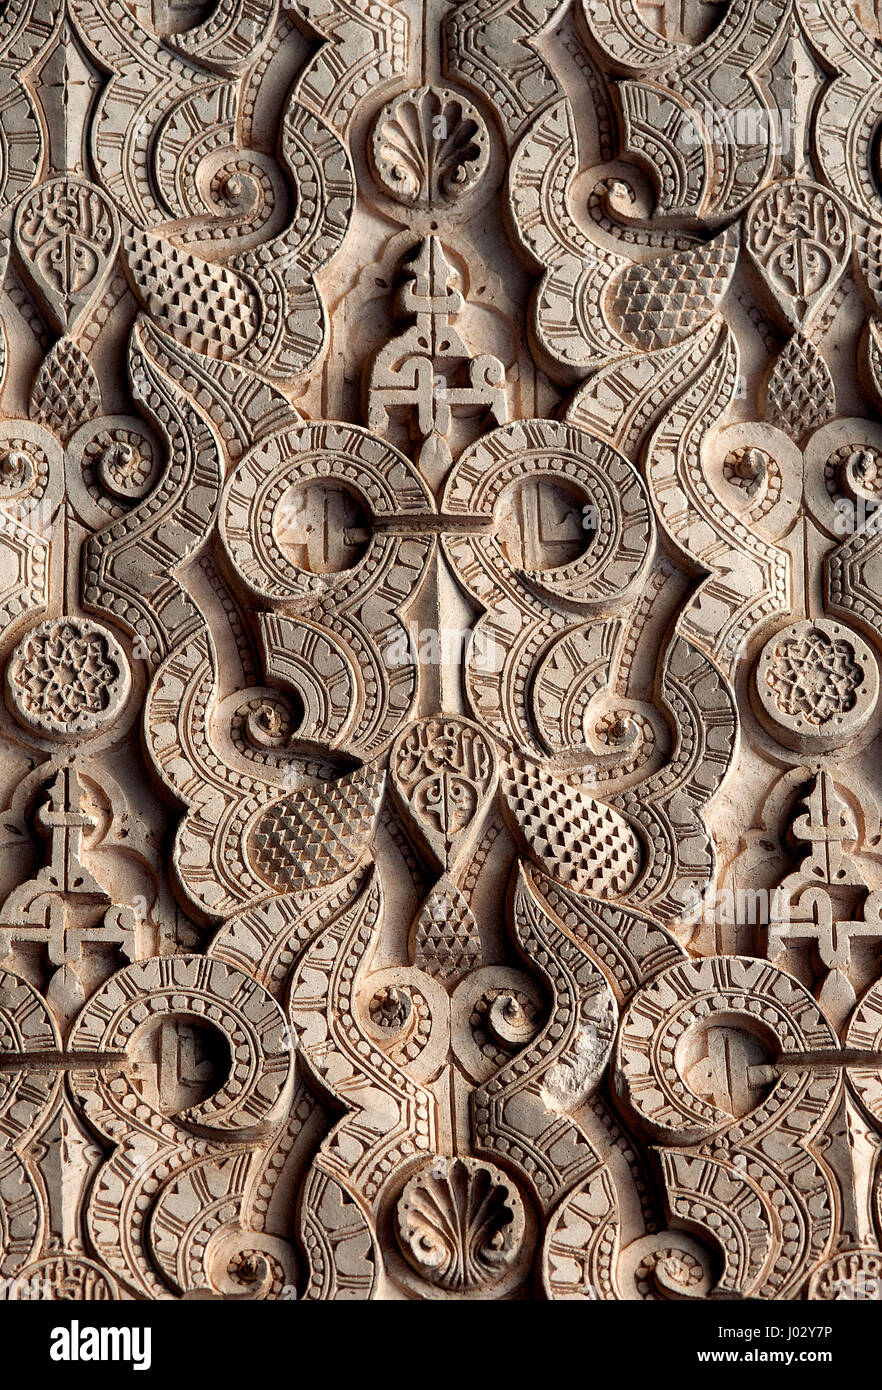 Symboles de l'islam et la géométrie sacrée ornent les murs et plafonds de la 'madrasa Ben Youssef' dans la zone de médina de Marrakech au Maroc. Banque D'Images